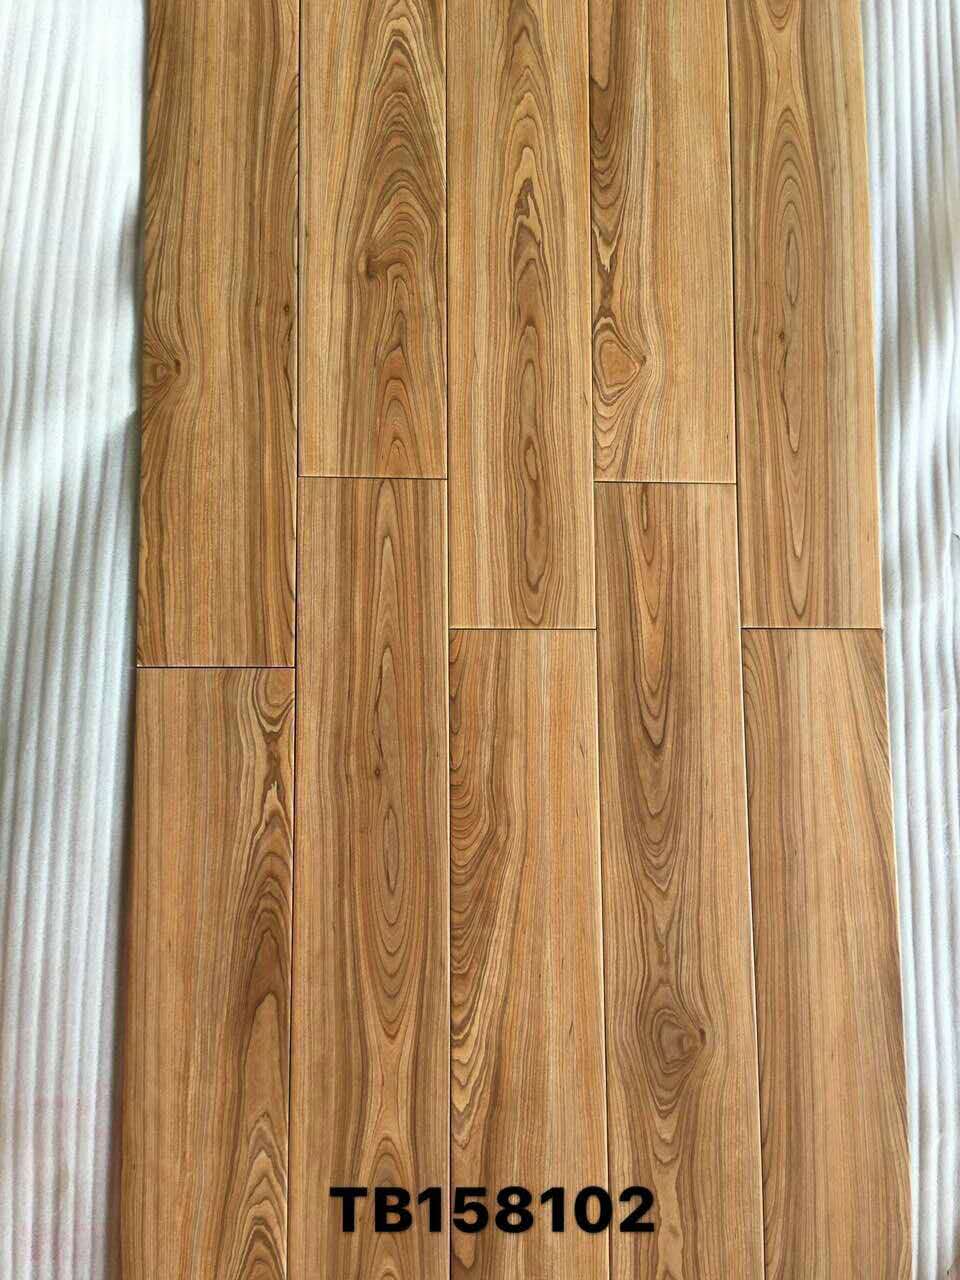 木纹砖仿古150 800防污防滑仿实木地板砖客厅卧室瓷木地板